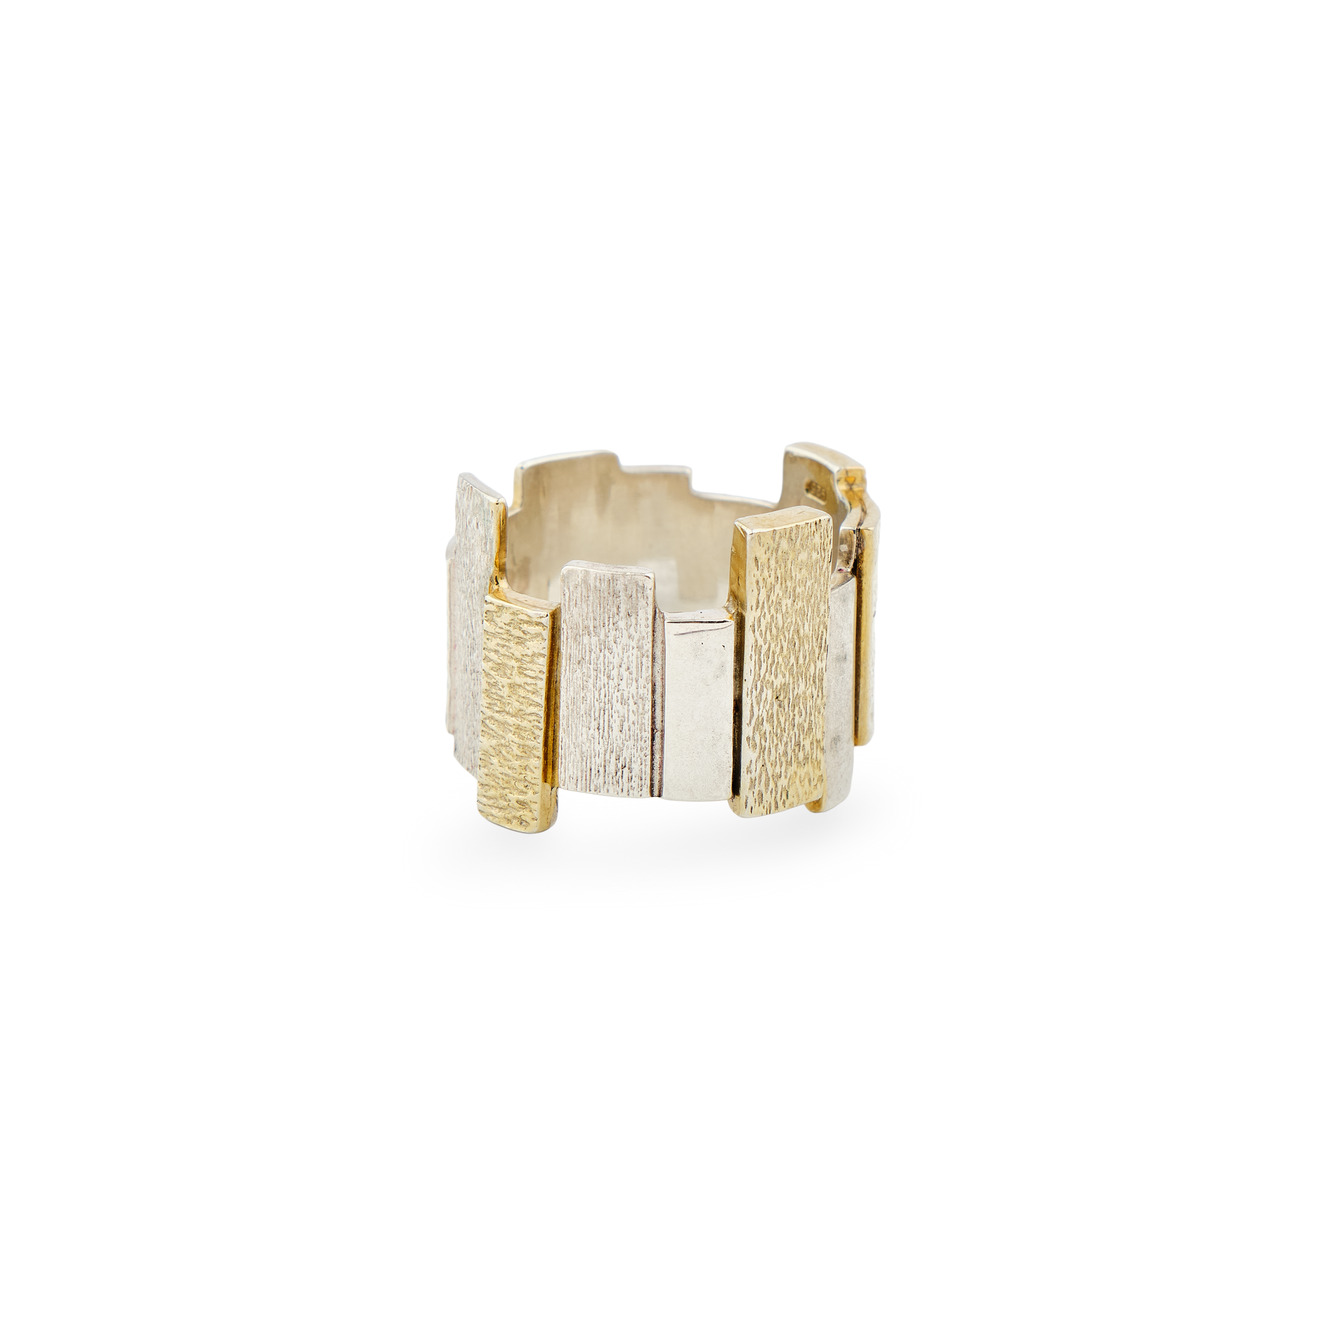 УРА jewelry Биколорное фактурное кольцо-город из серебра phosphor широкое фактурное кольцо ccs из серебра